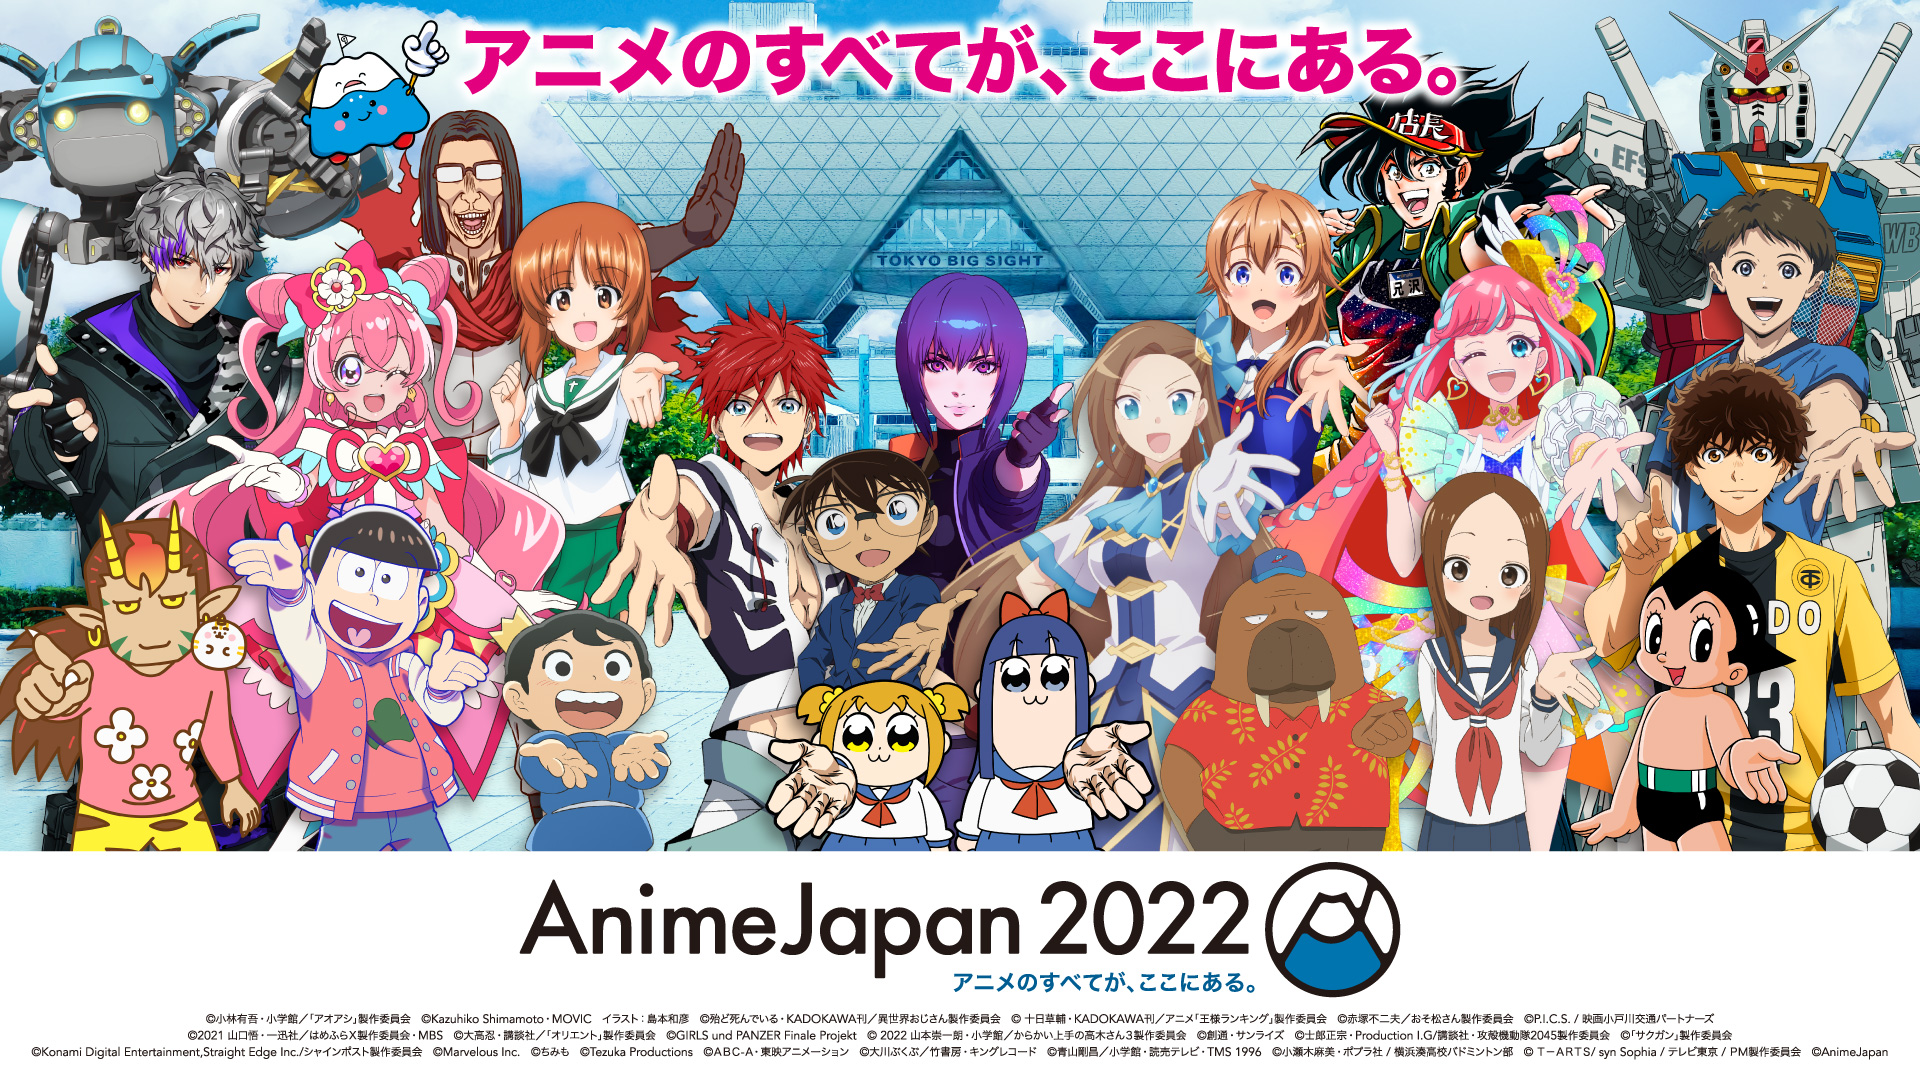 圖 AnimeJapan 2022視覺圖